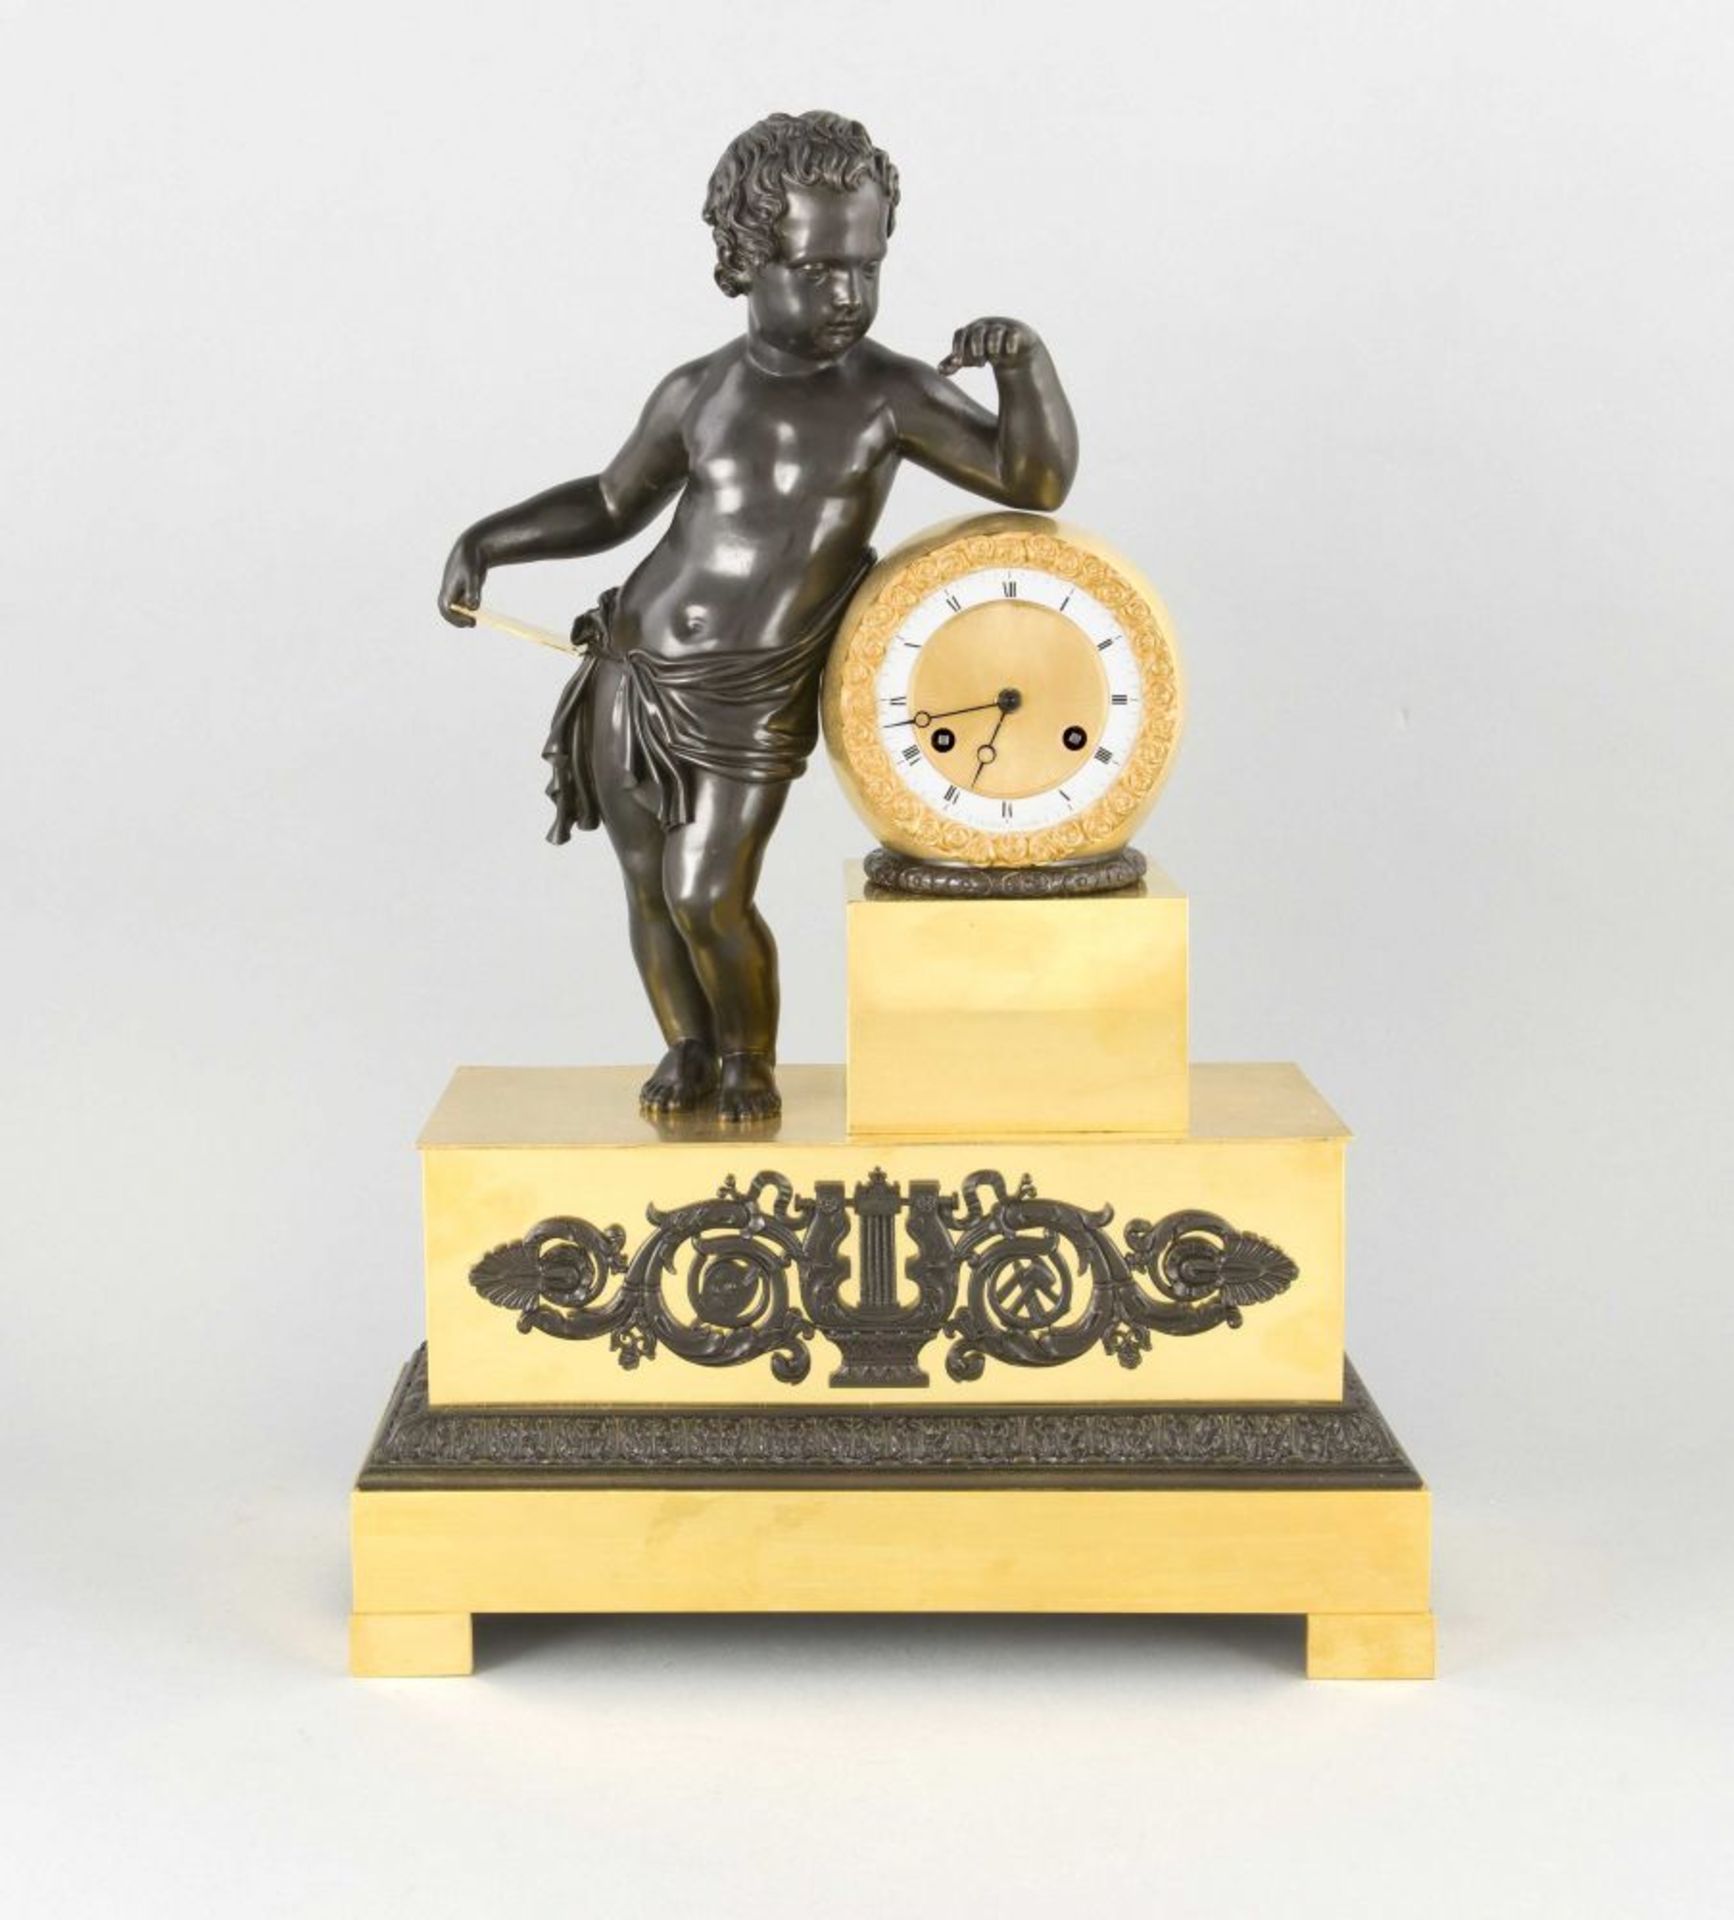 Dekorative Figurenpendule um 1800, patiniertes und poliertes Bronzegehäuse, umlaufender